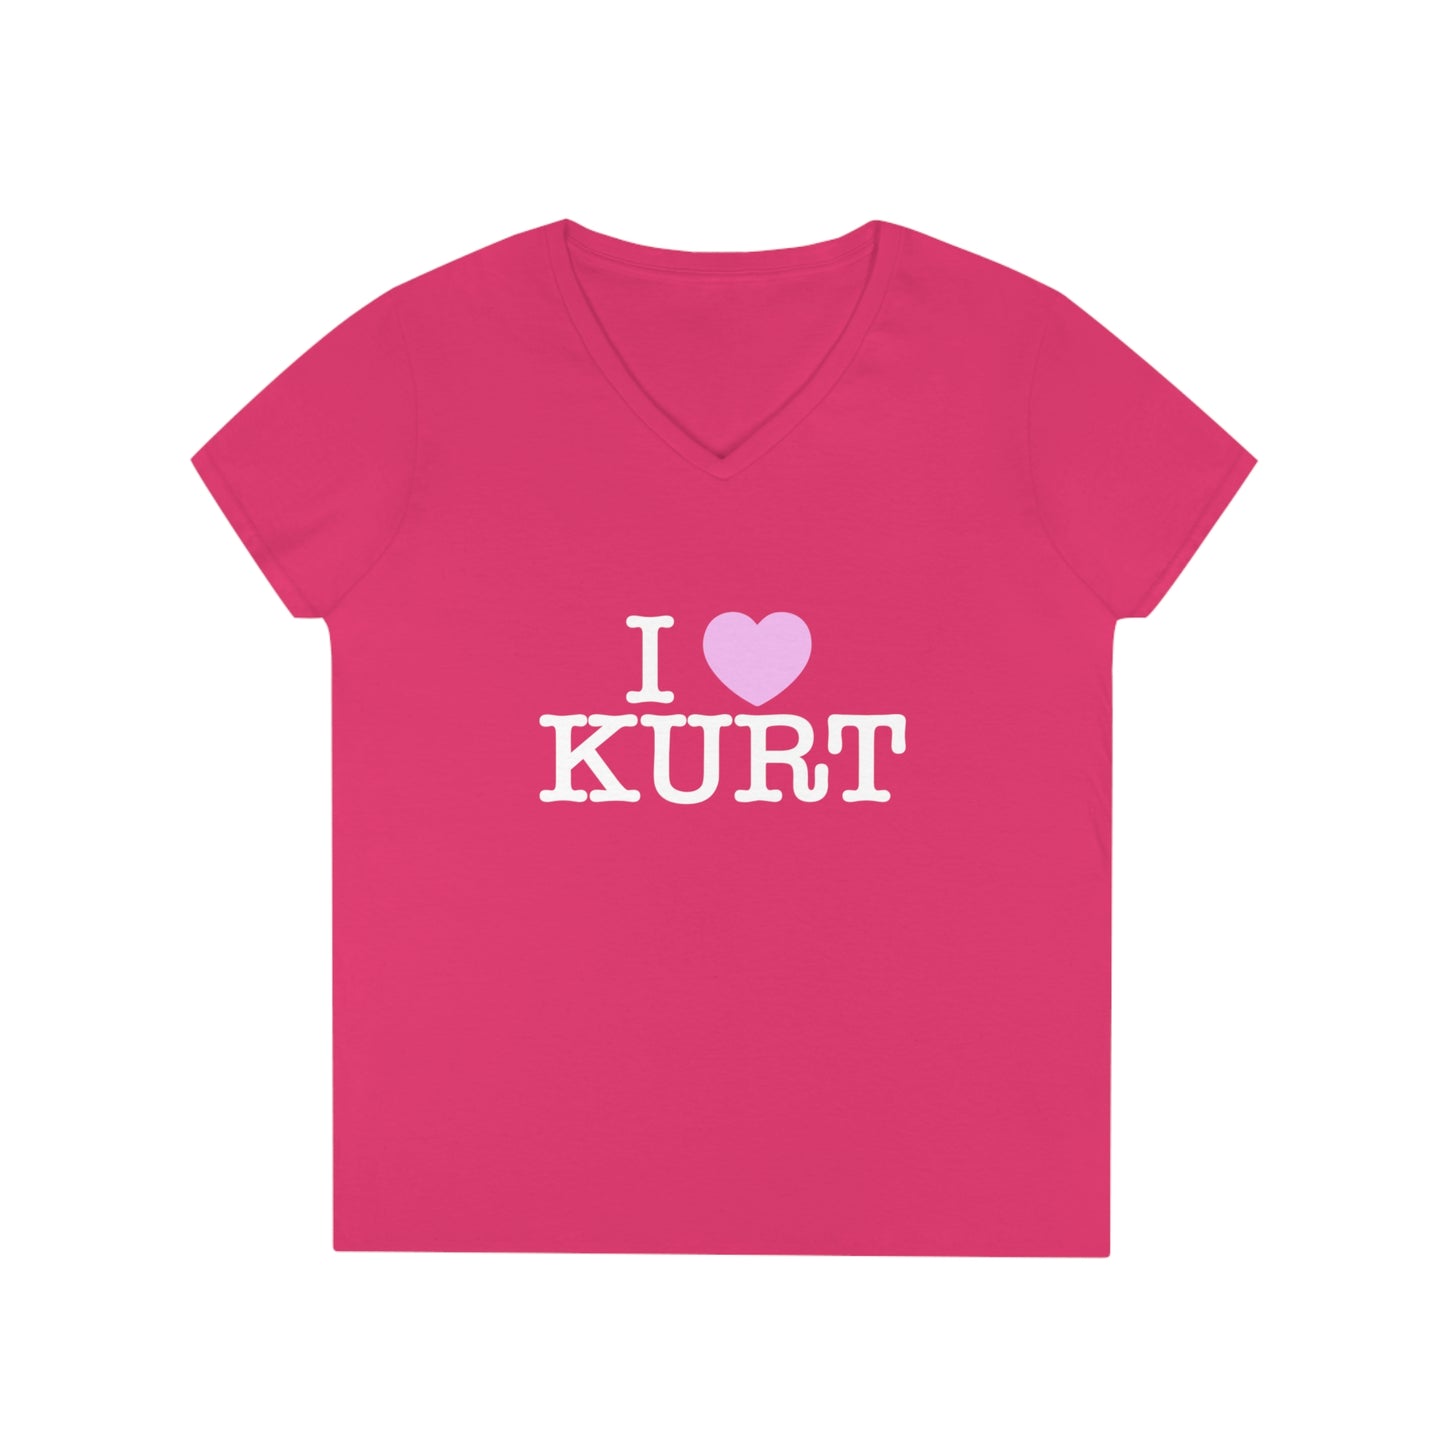 I Heart Kurt Ladies' V-Neck T-Shirt